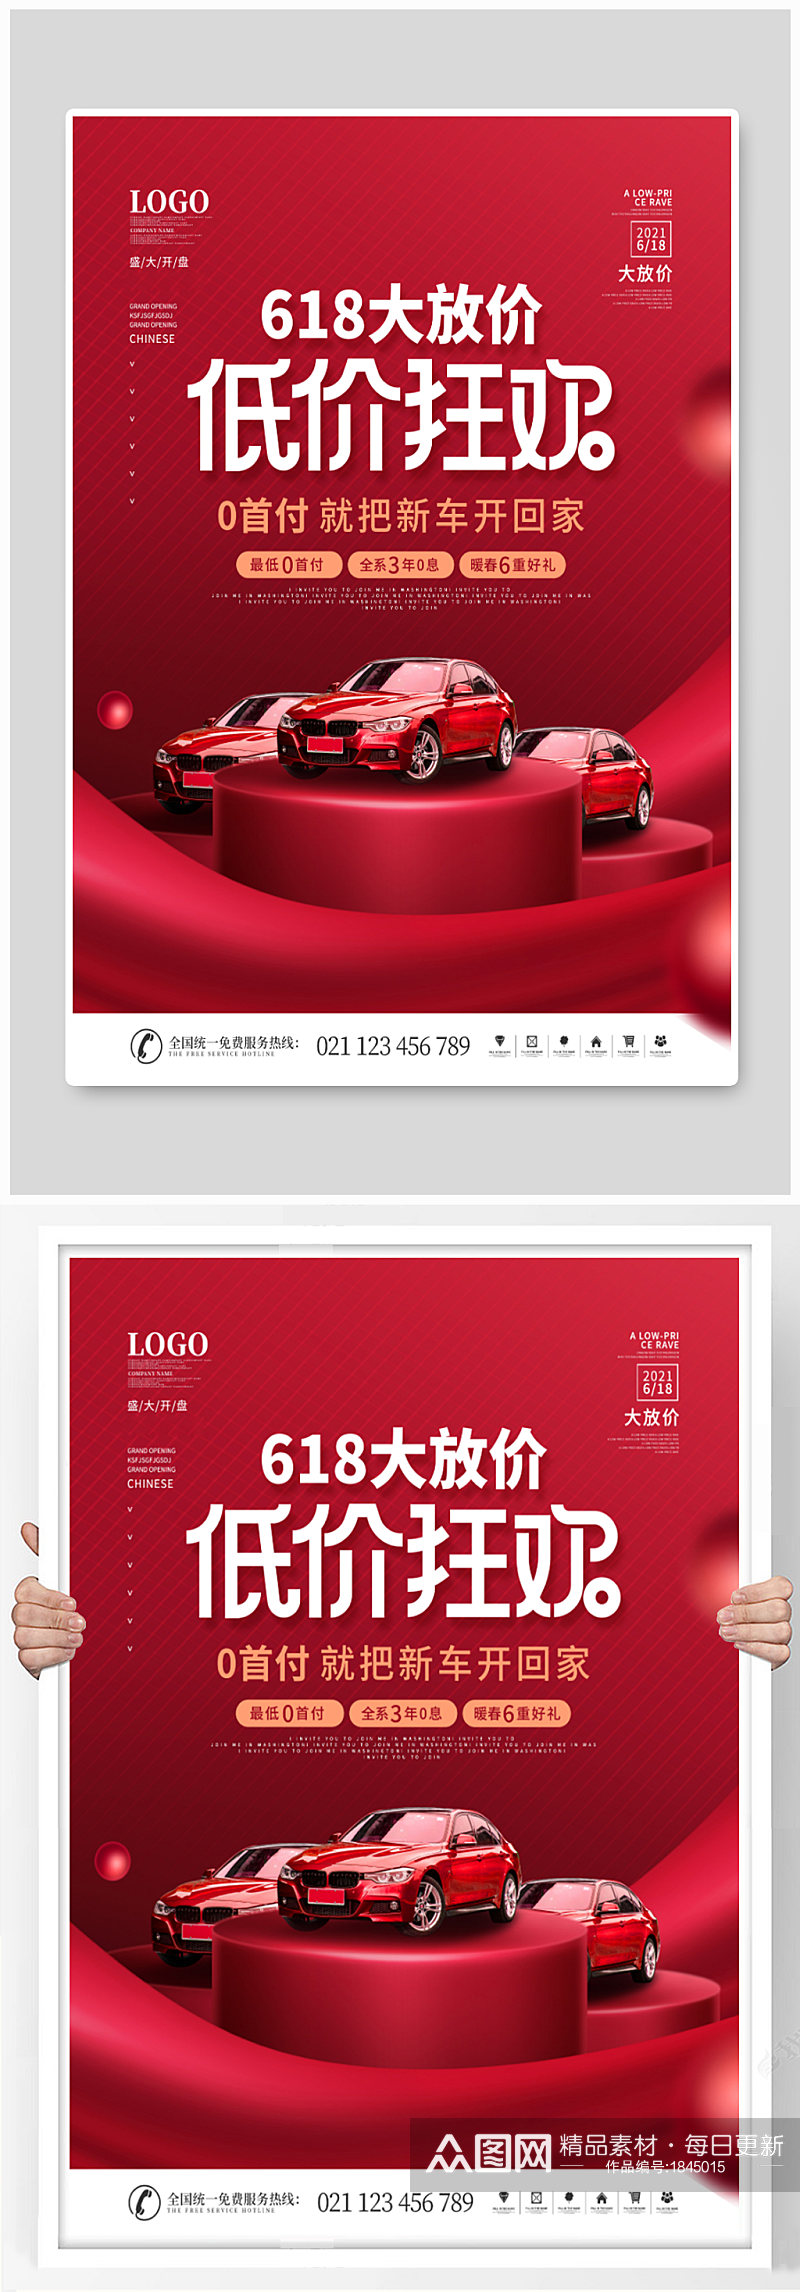 简约风红色喜庆618汽车促销信息宣传海报素材